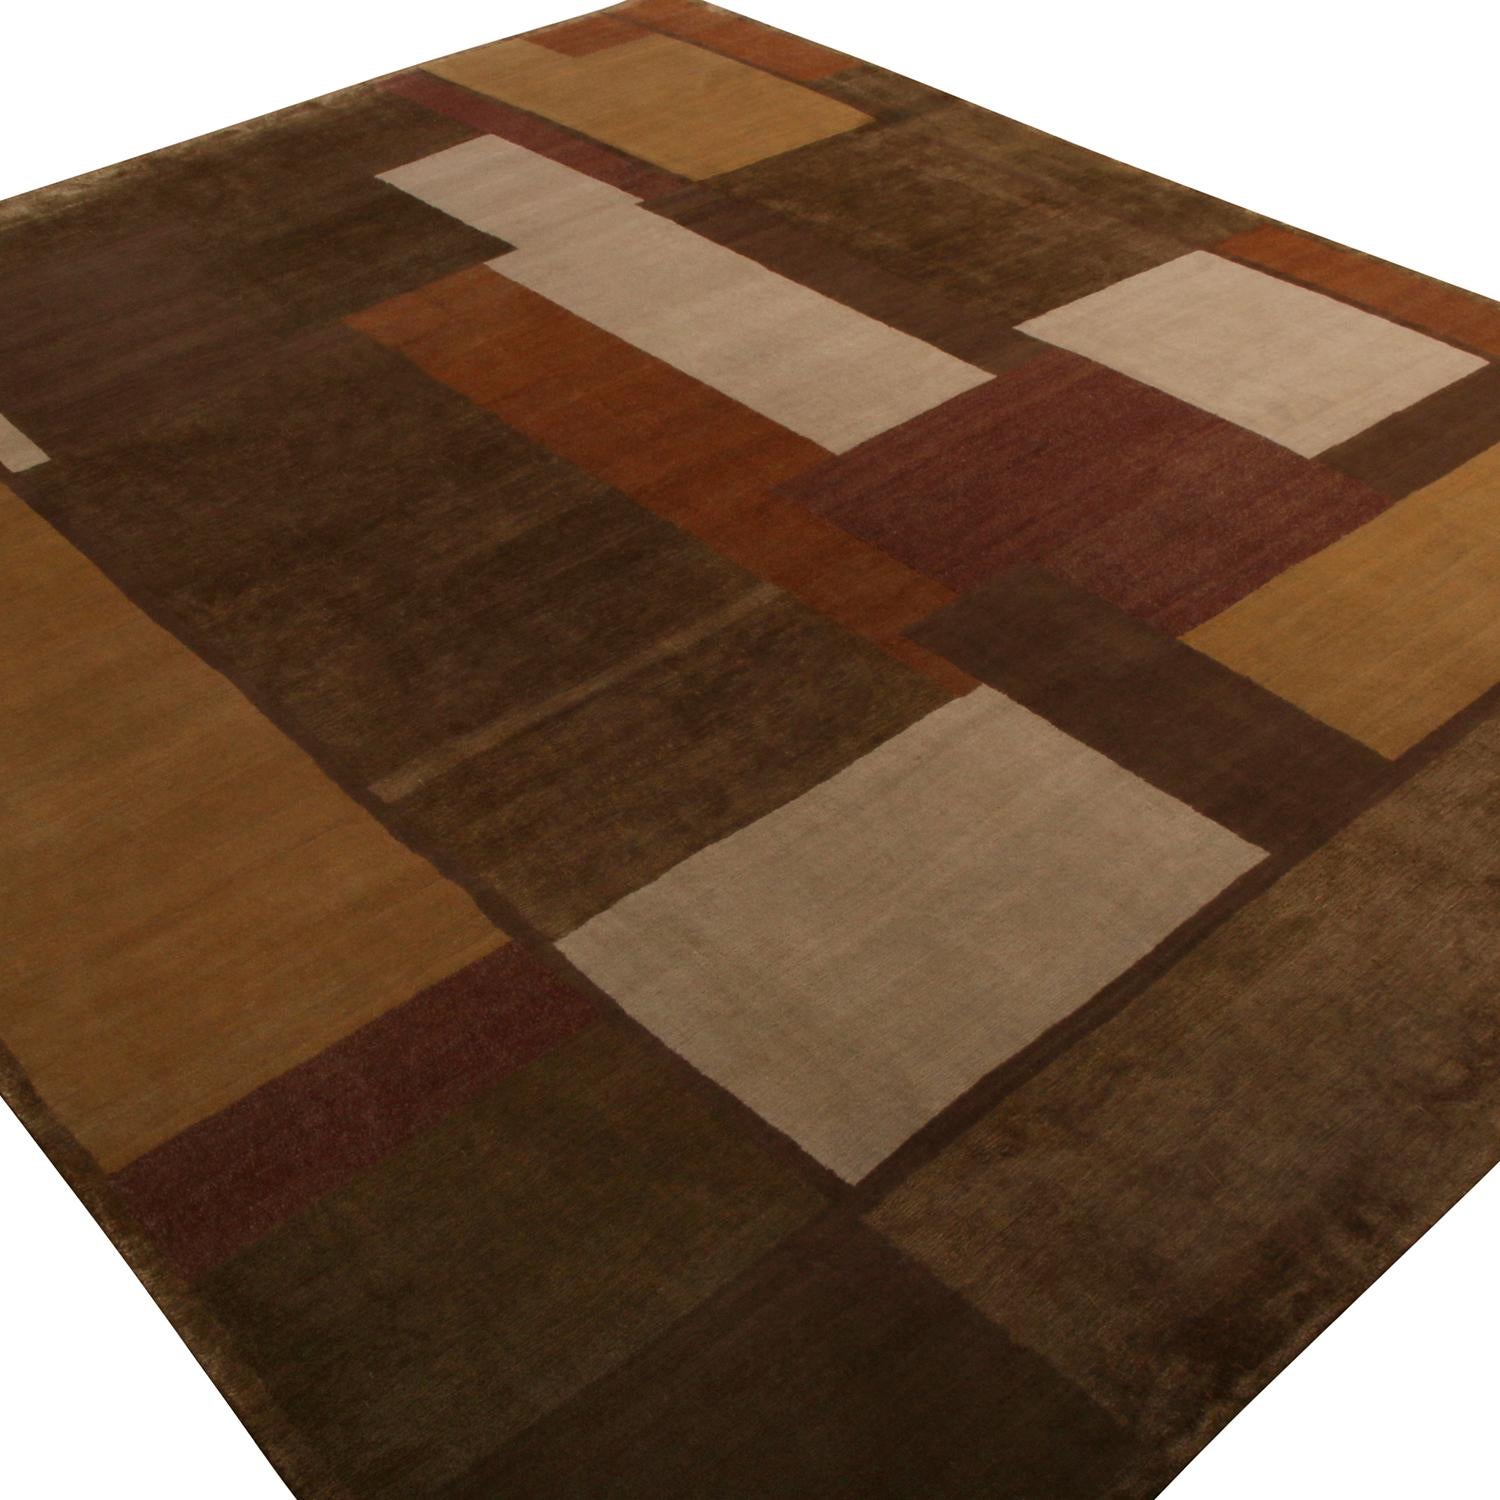 Entice de cubisme et de sensibilité Art déco, ce tapis 8x10 de la collection New & Kilim de Rug & Kilim présente un motif géométrique de style panneau s'épanouissant dans des tons bruns et crème luxuriants pour une pagination séduisante sur